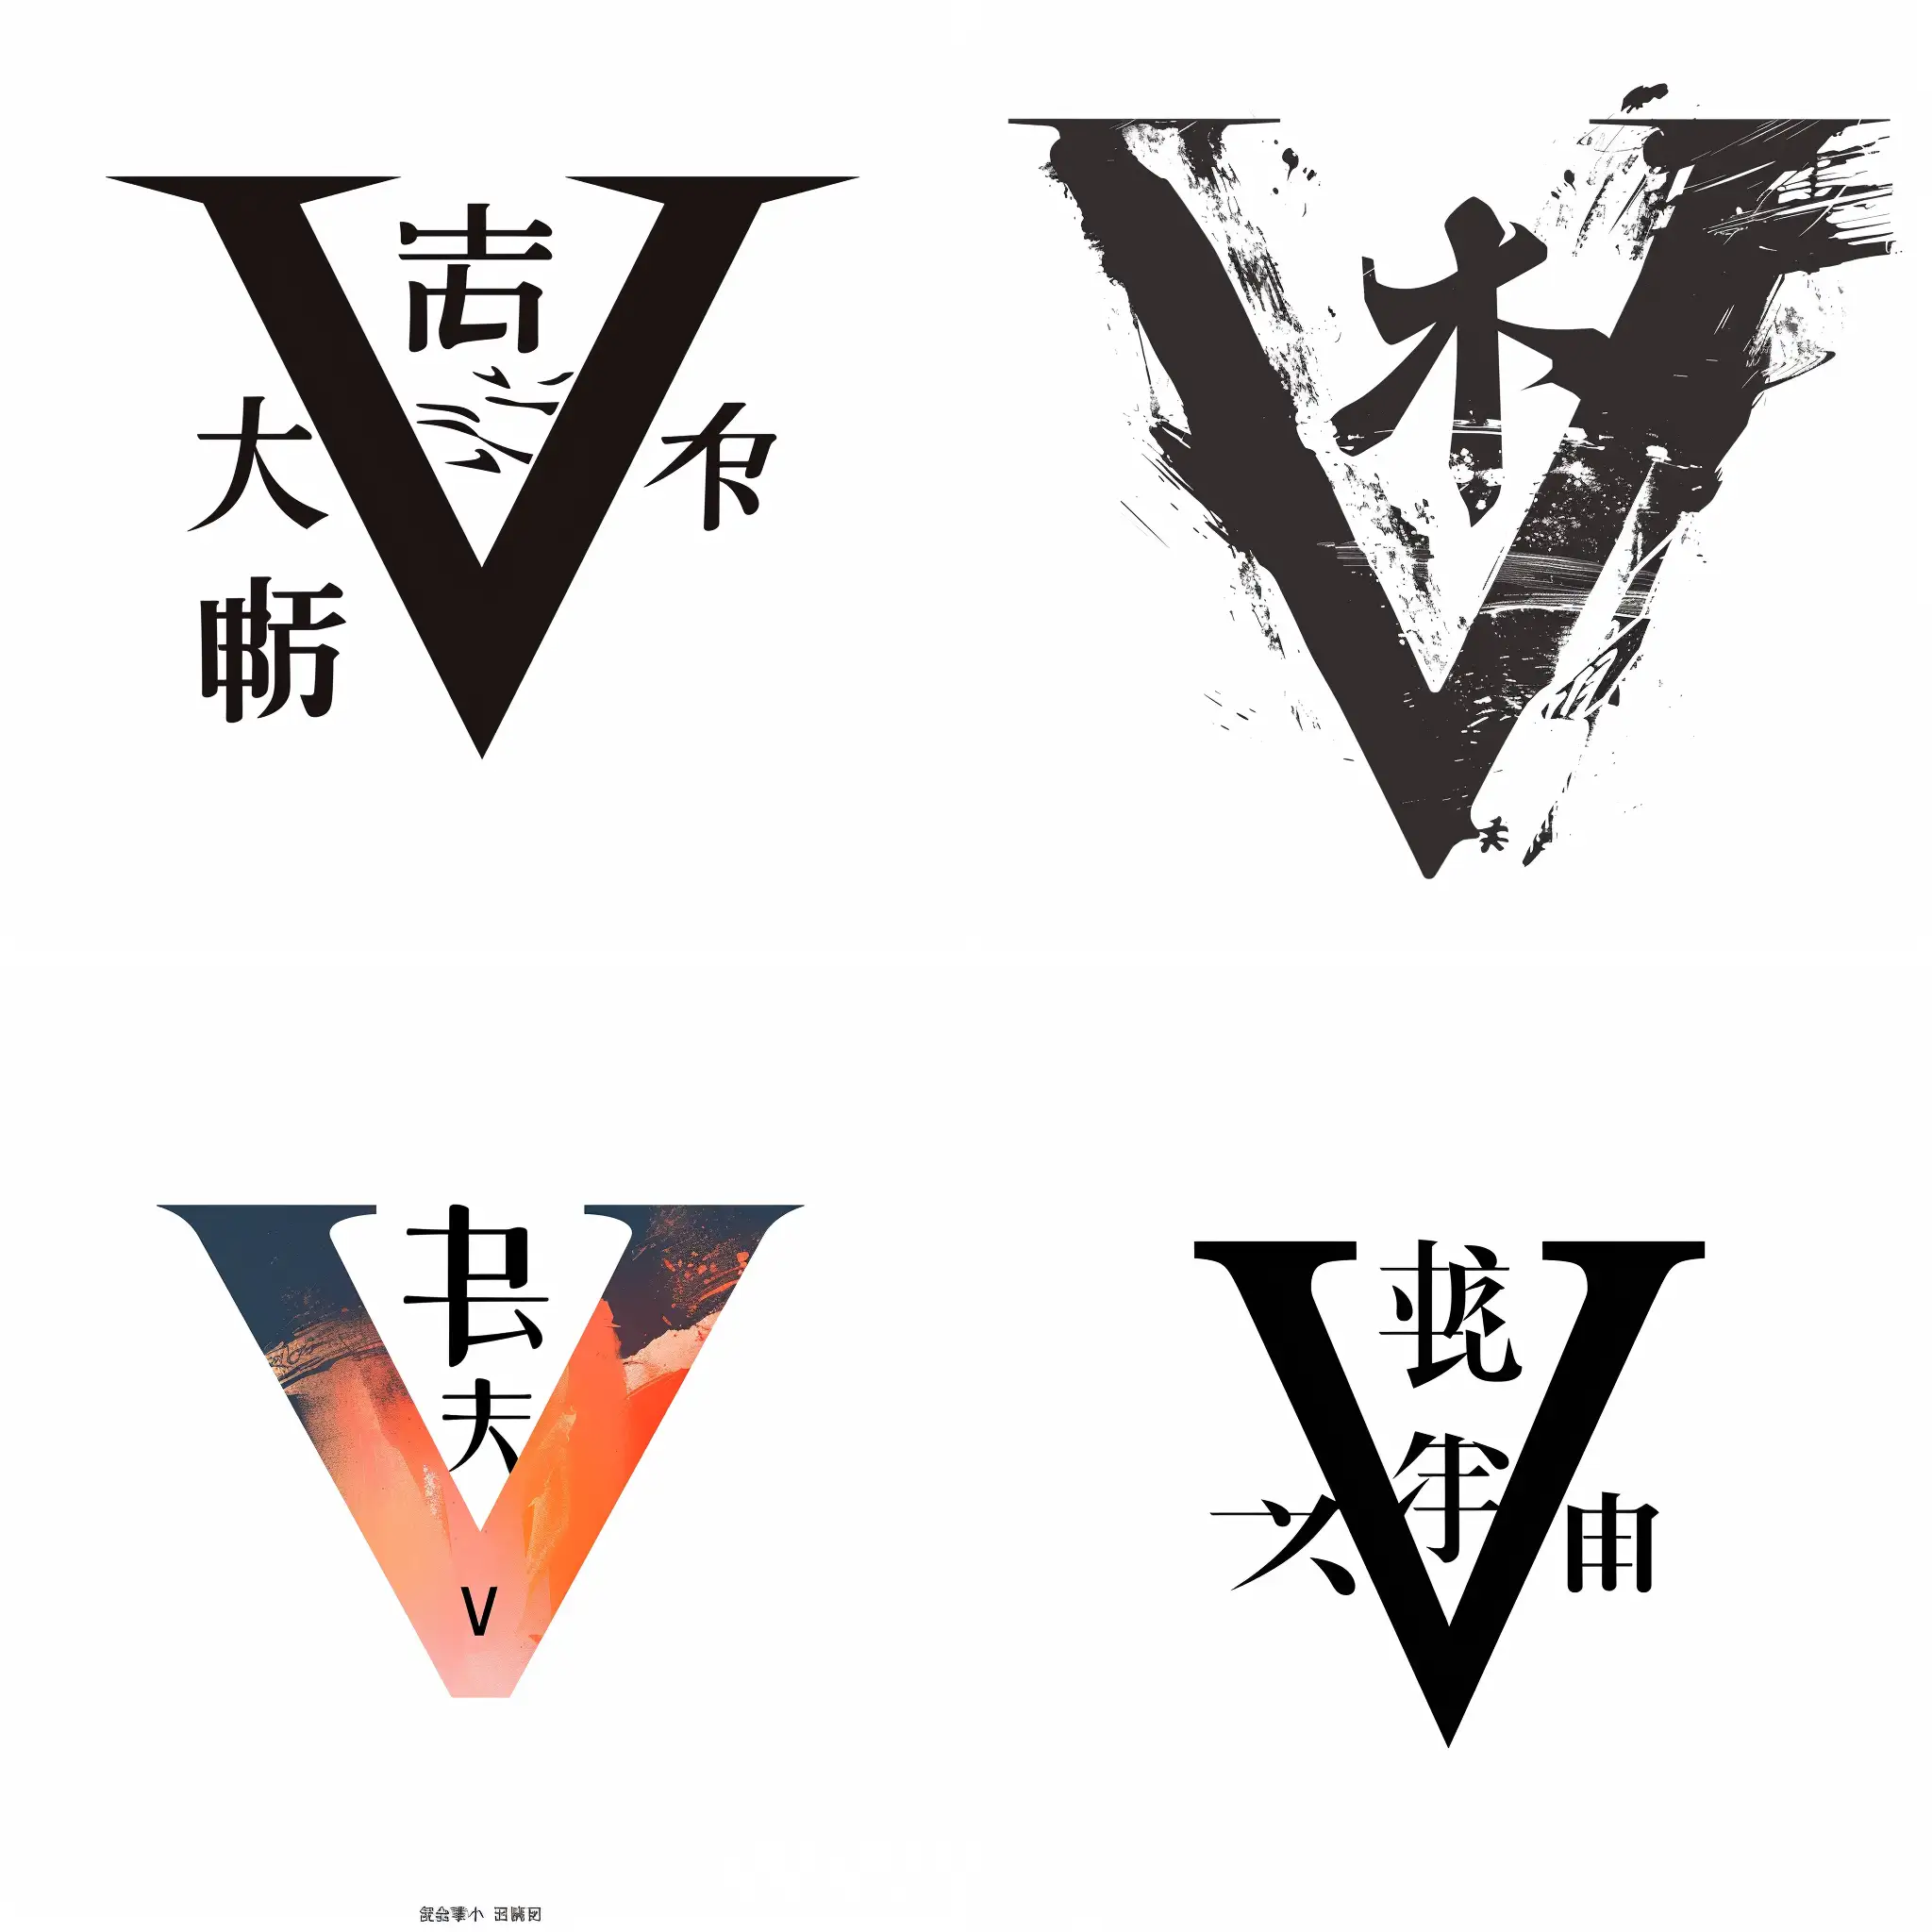 生成一个项目logo，主体是一个大写的英文字母 V，在英文字母 V 开口的里面，有个中文的字符 "三”